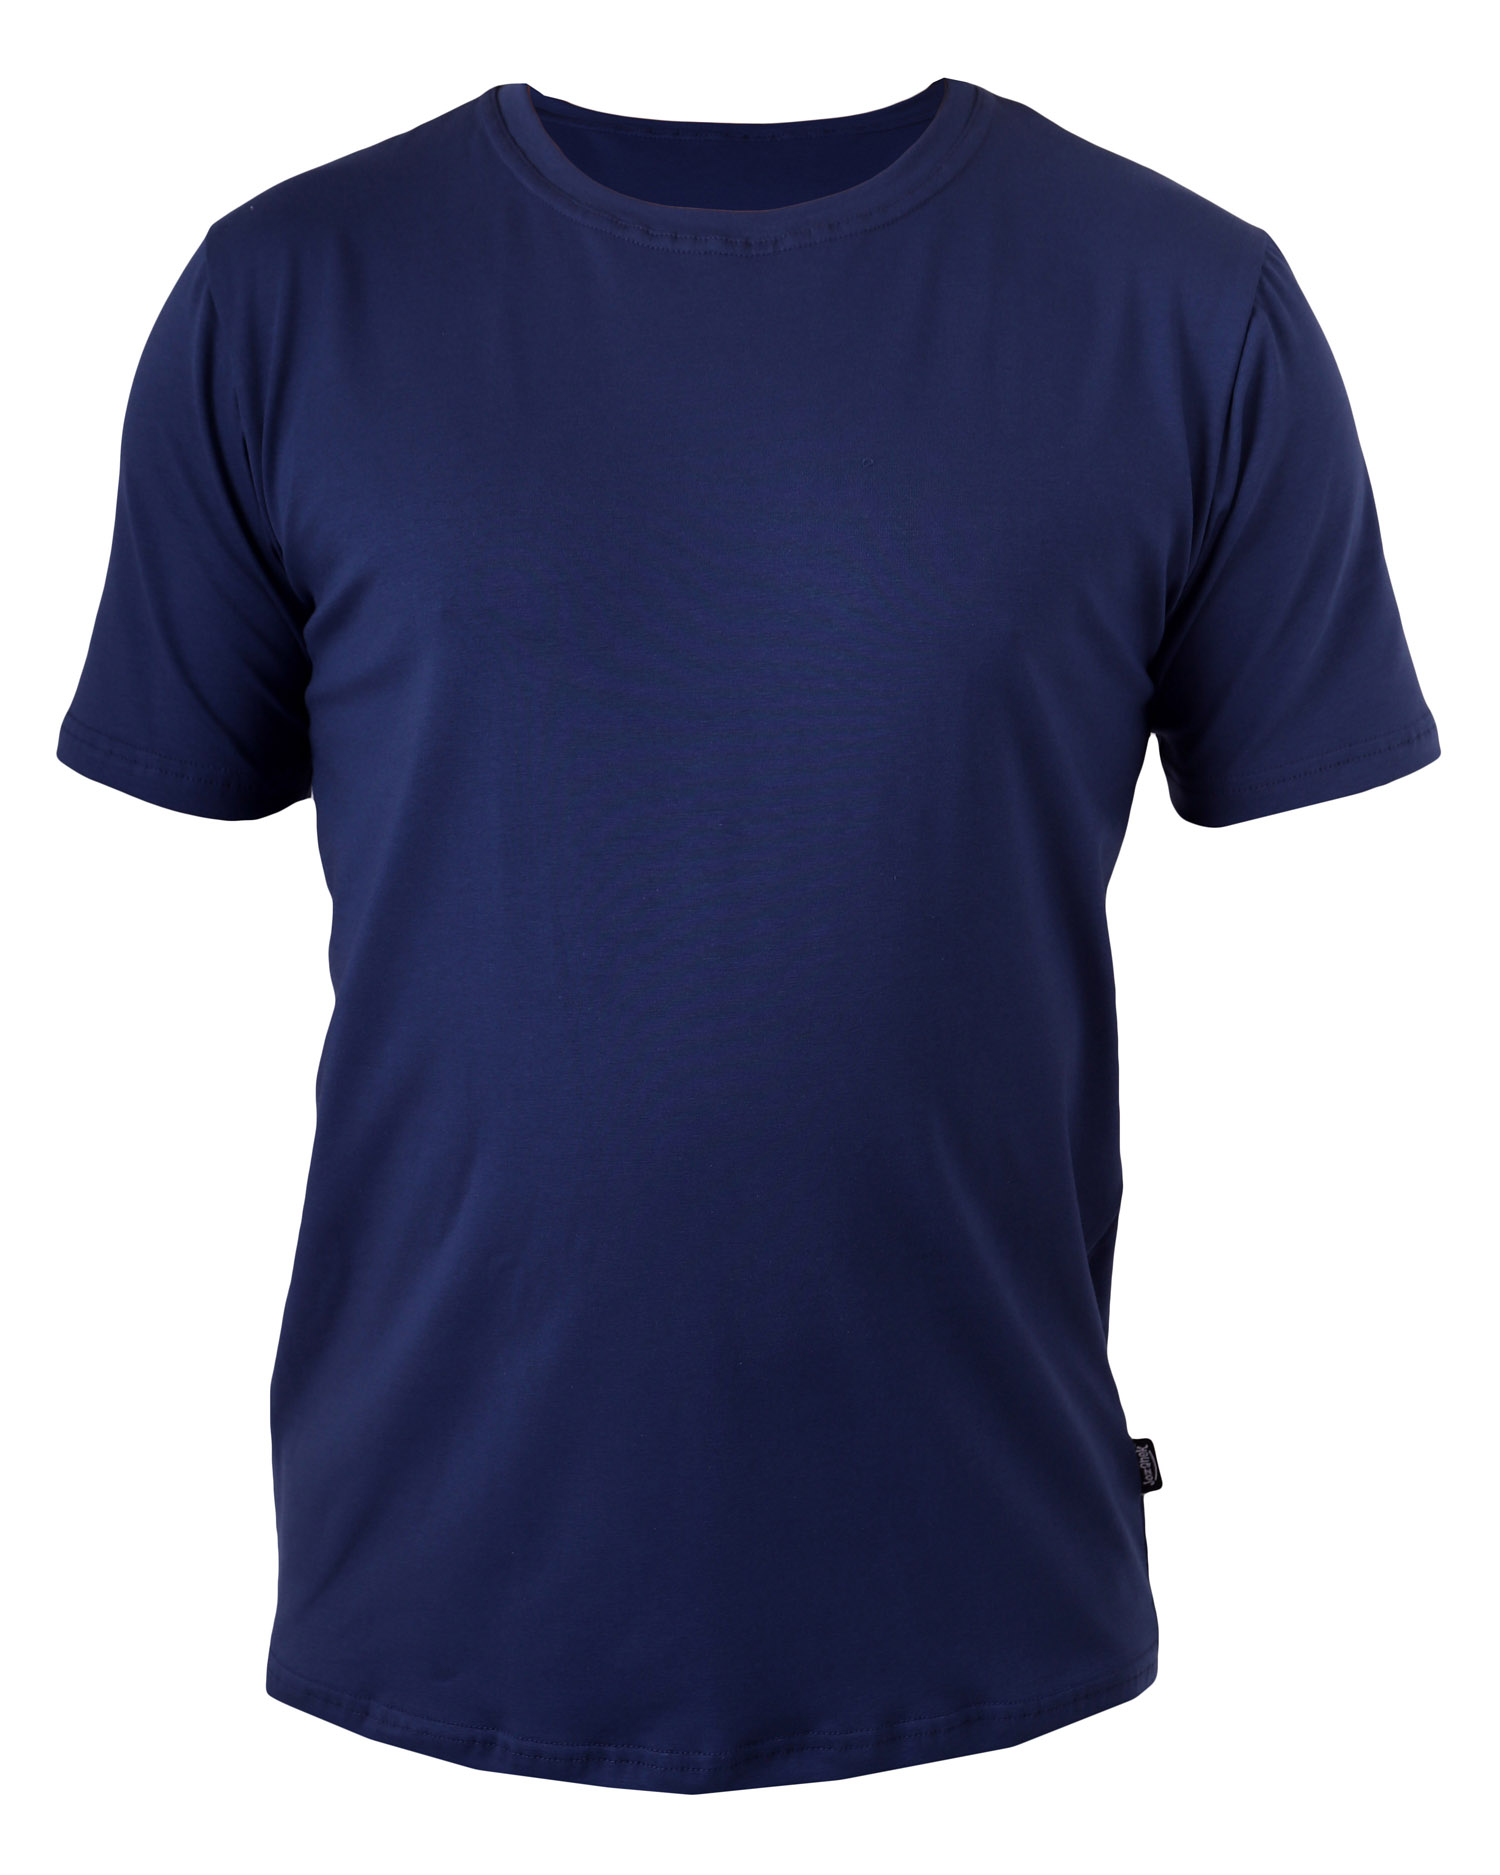 Pánské tričko Marek, XXL, 2. jakost č. 777